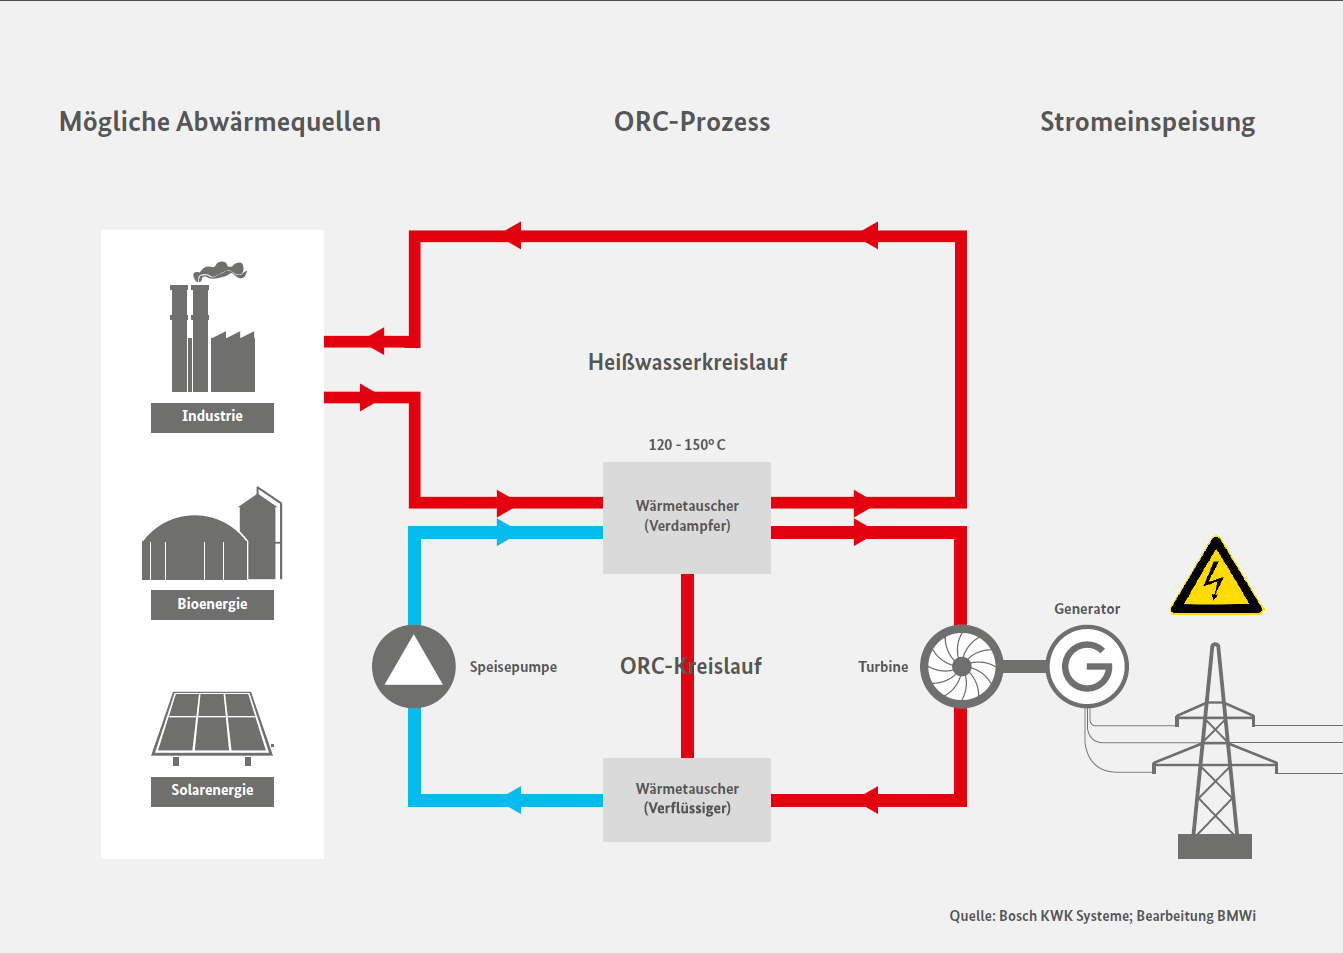 Bild 3: Mögliche Abwärmequellen und ihr Weg in die Stromeinspeisung (© BMWi)